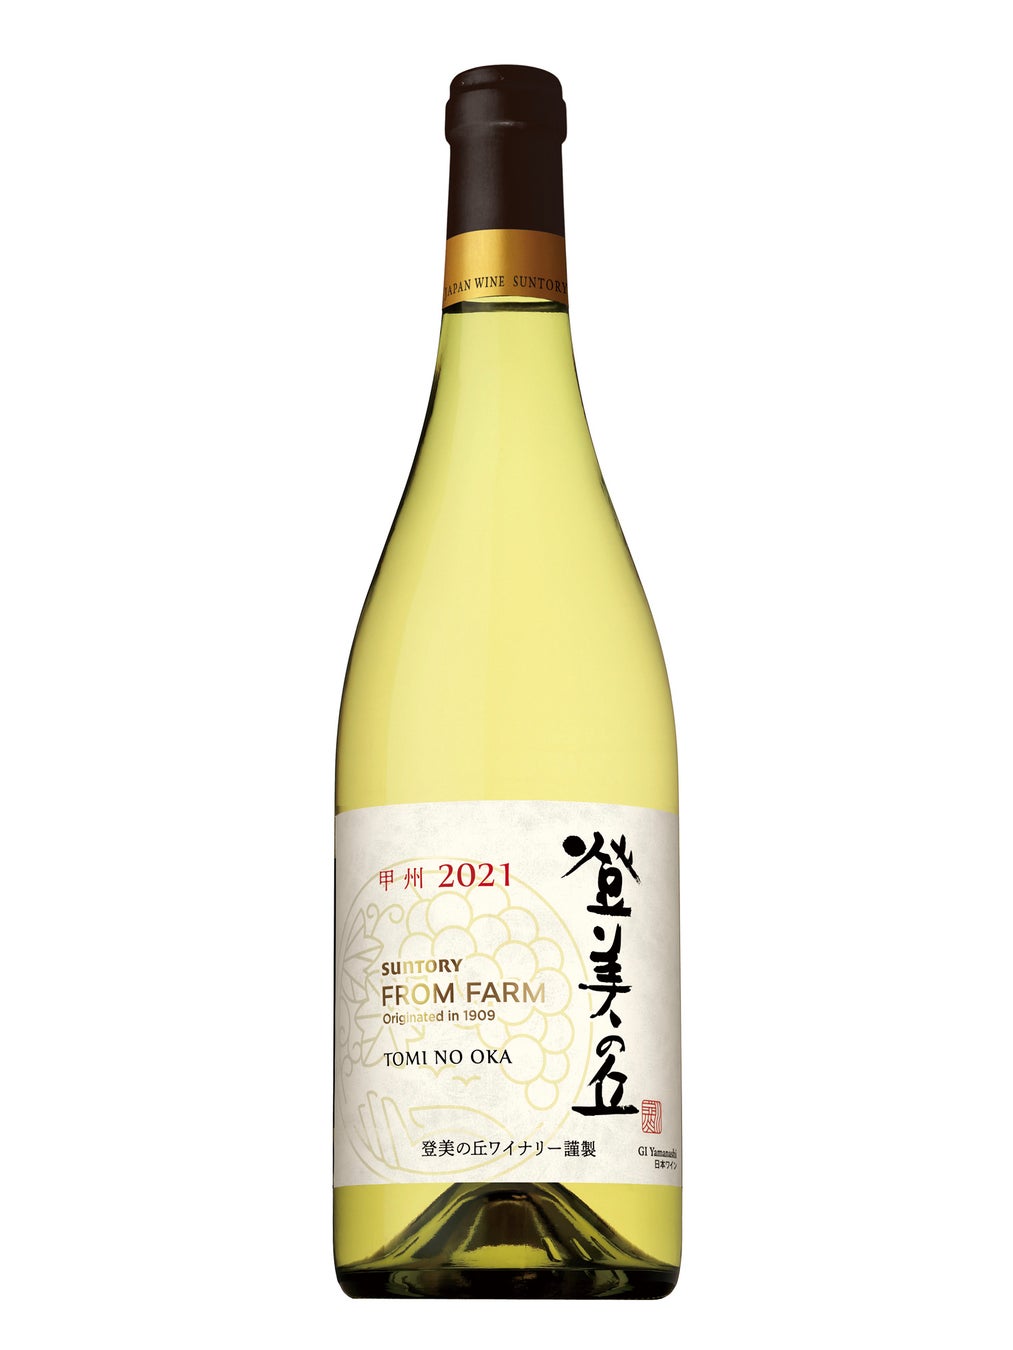 日本ワイン「ＳＵＮＴＯＲＹ ＦＲＯＭ ＦＡＲＭ 登美の丘 甲州 ２０２１」数量限定新発売